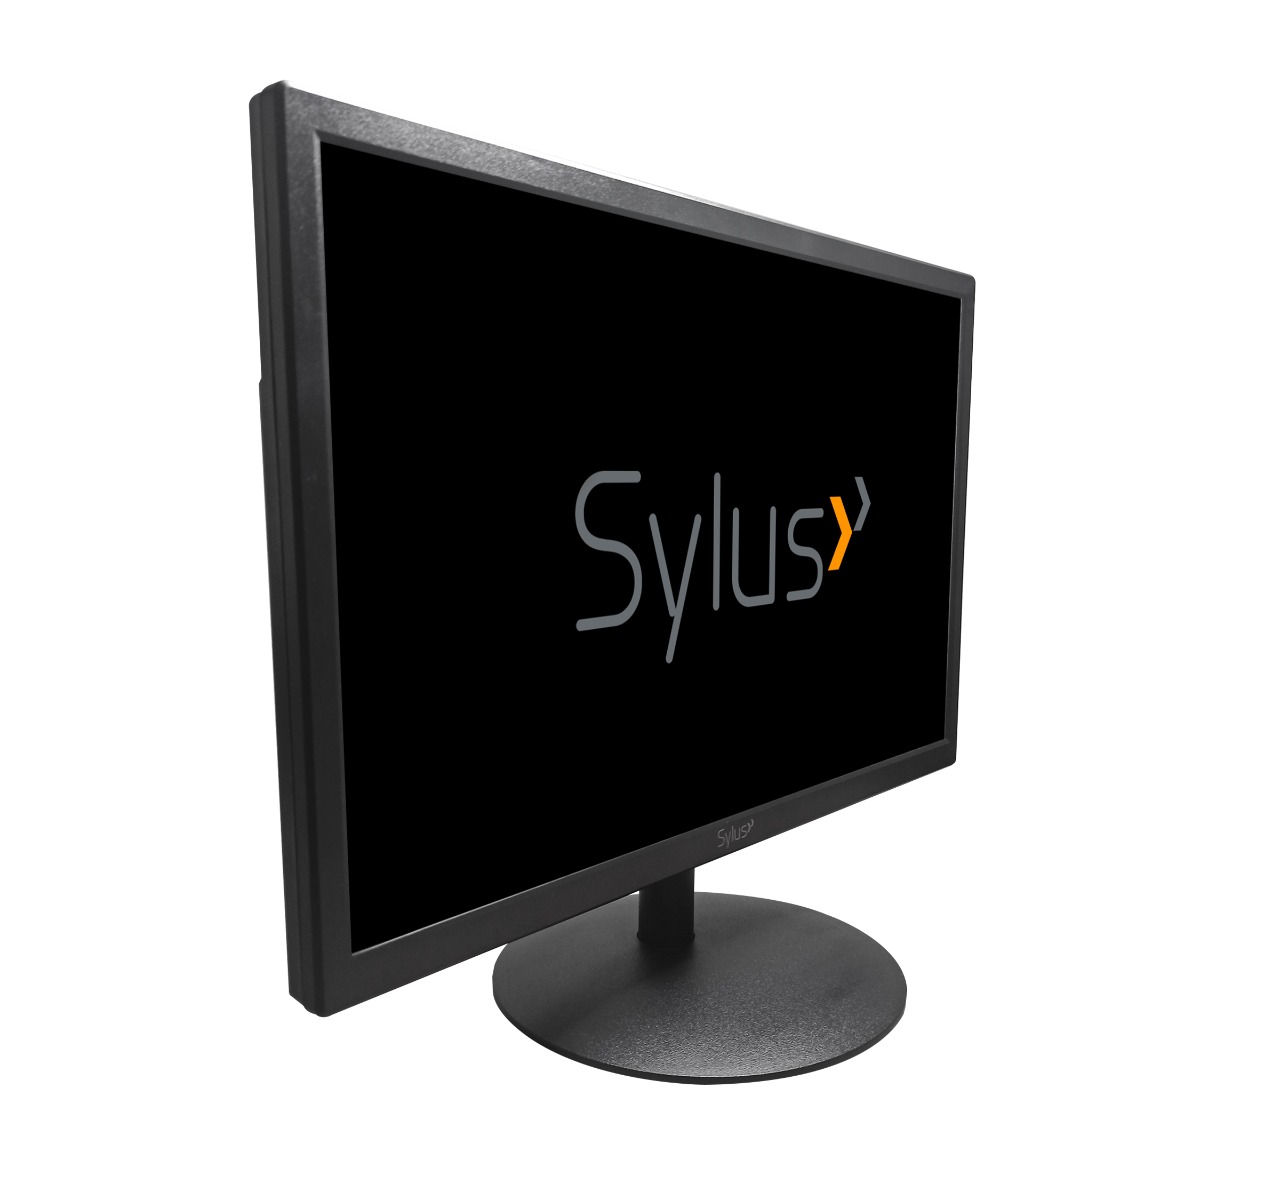 Monitor Sylus 190Vh 19" 1440X900 5Ms Hdmi, Vga Negro, incluye cable HDMI